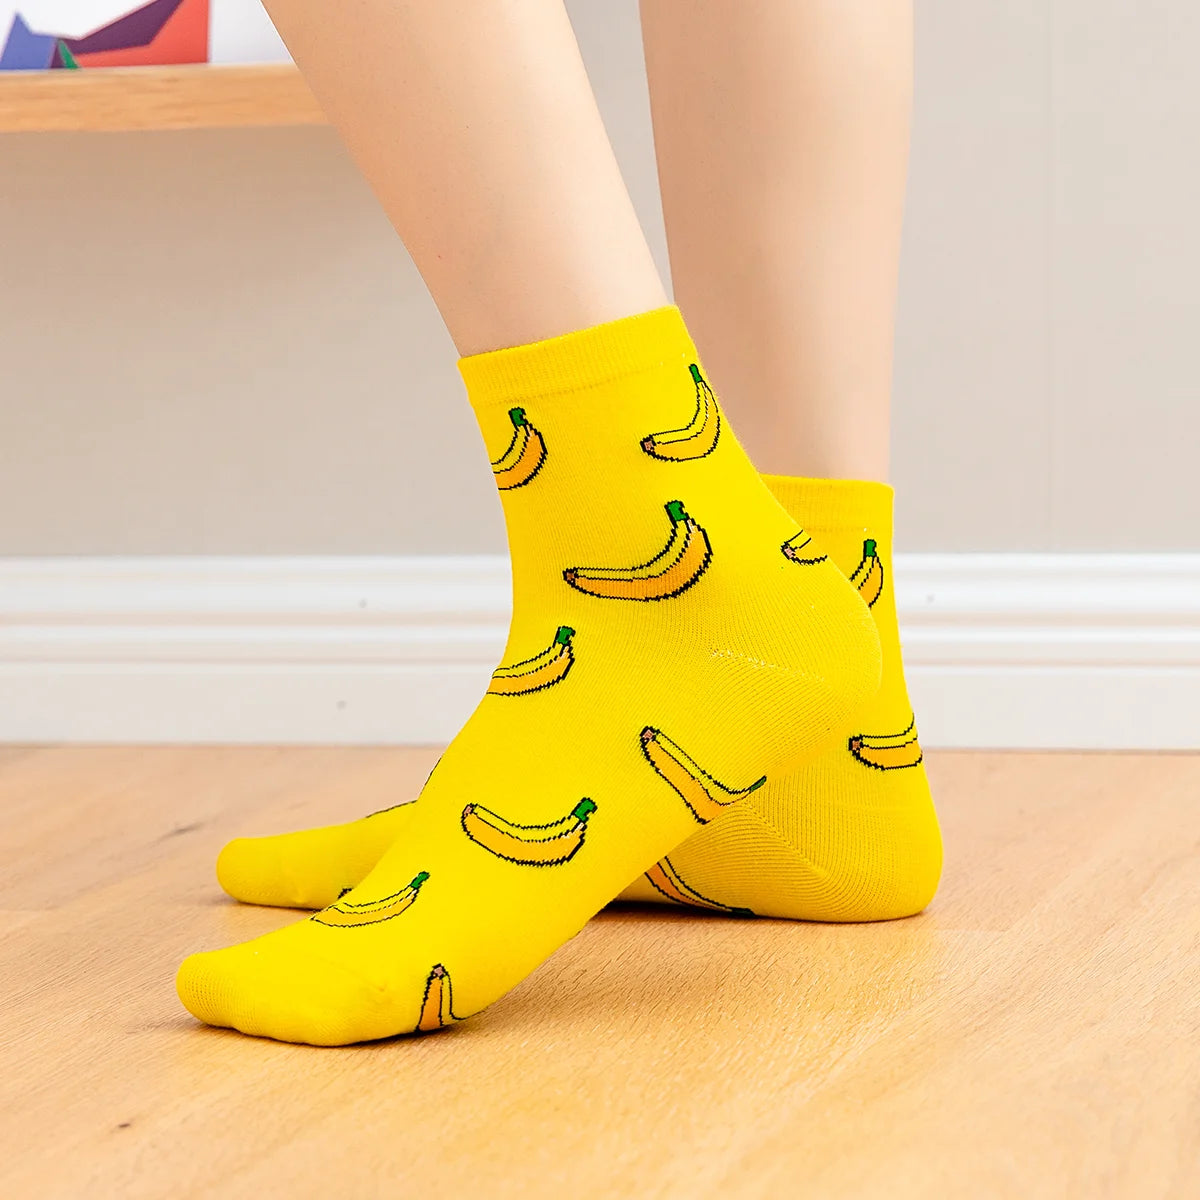 Chaussettes bananes longues en coton à motif fruit pour adultes | Chaussettes douces et confortables | Fabriquées à partir de matériaux de haute qualité | Un cadeau parfait pour les hommes et les femmes de tous âges